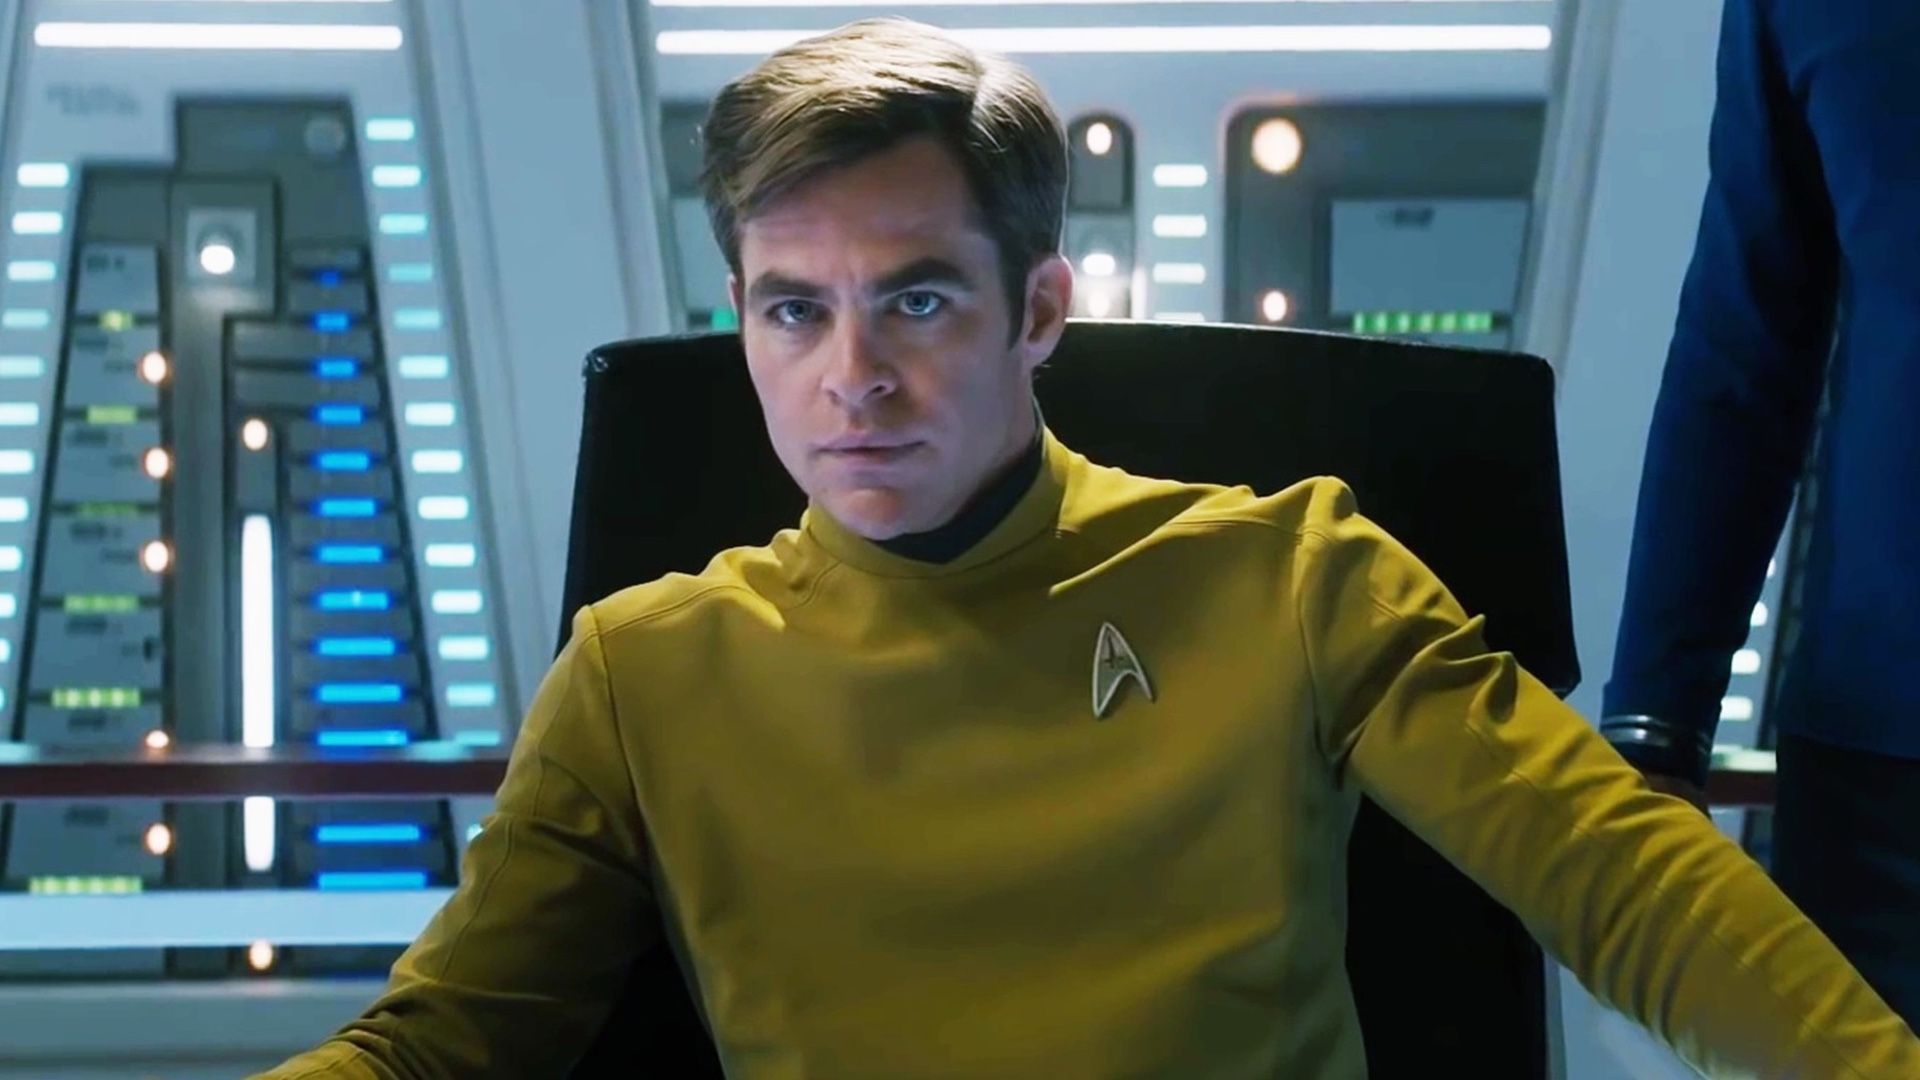 Star Trek 4 moves forward with Chris Pine back as Captain Kirk